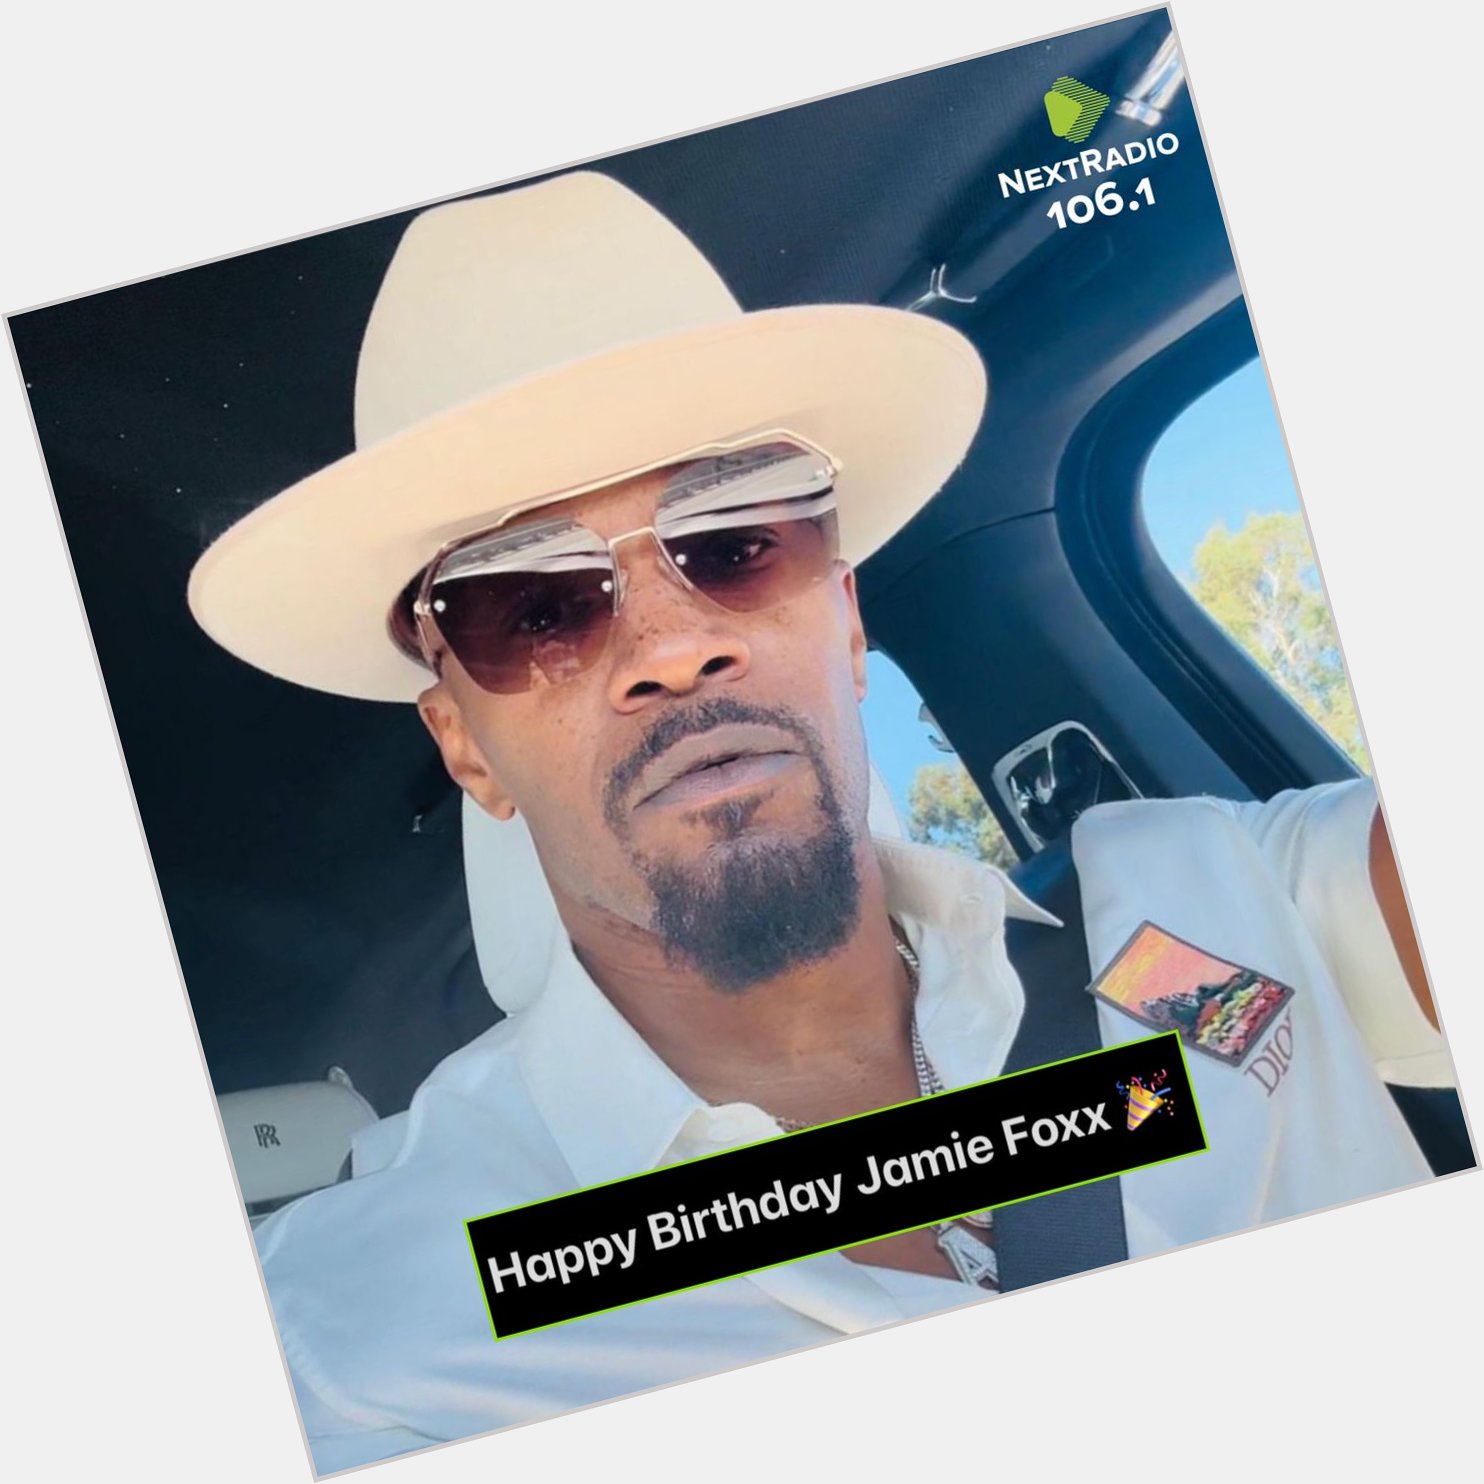 Happy Birthday Jamie Foxx  